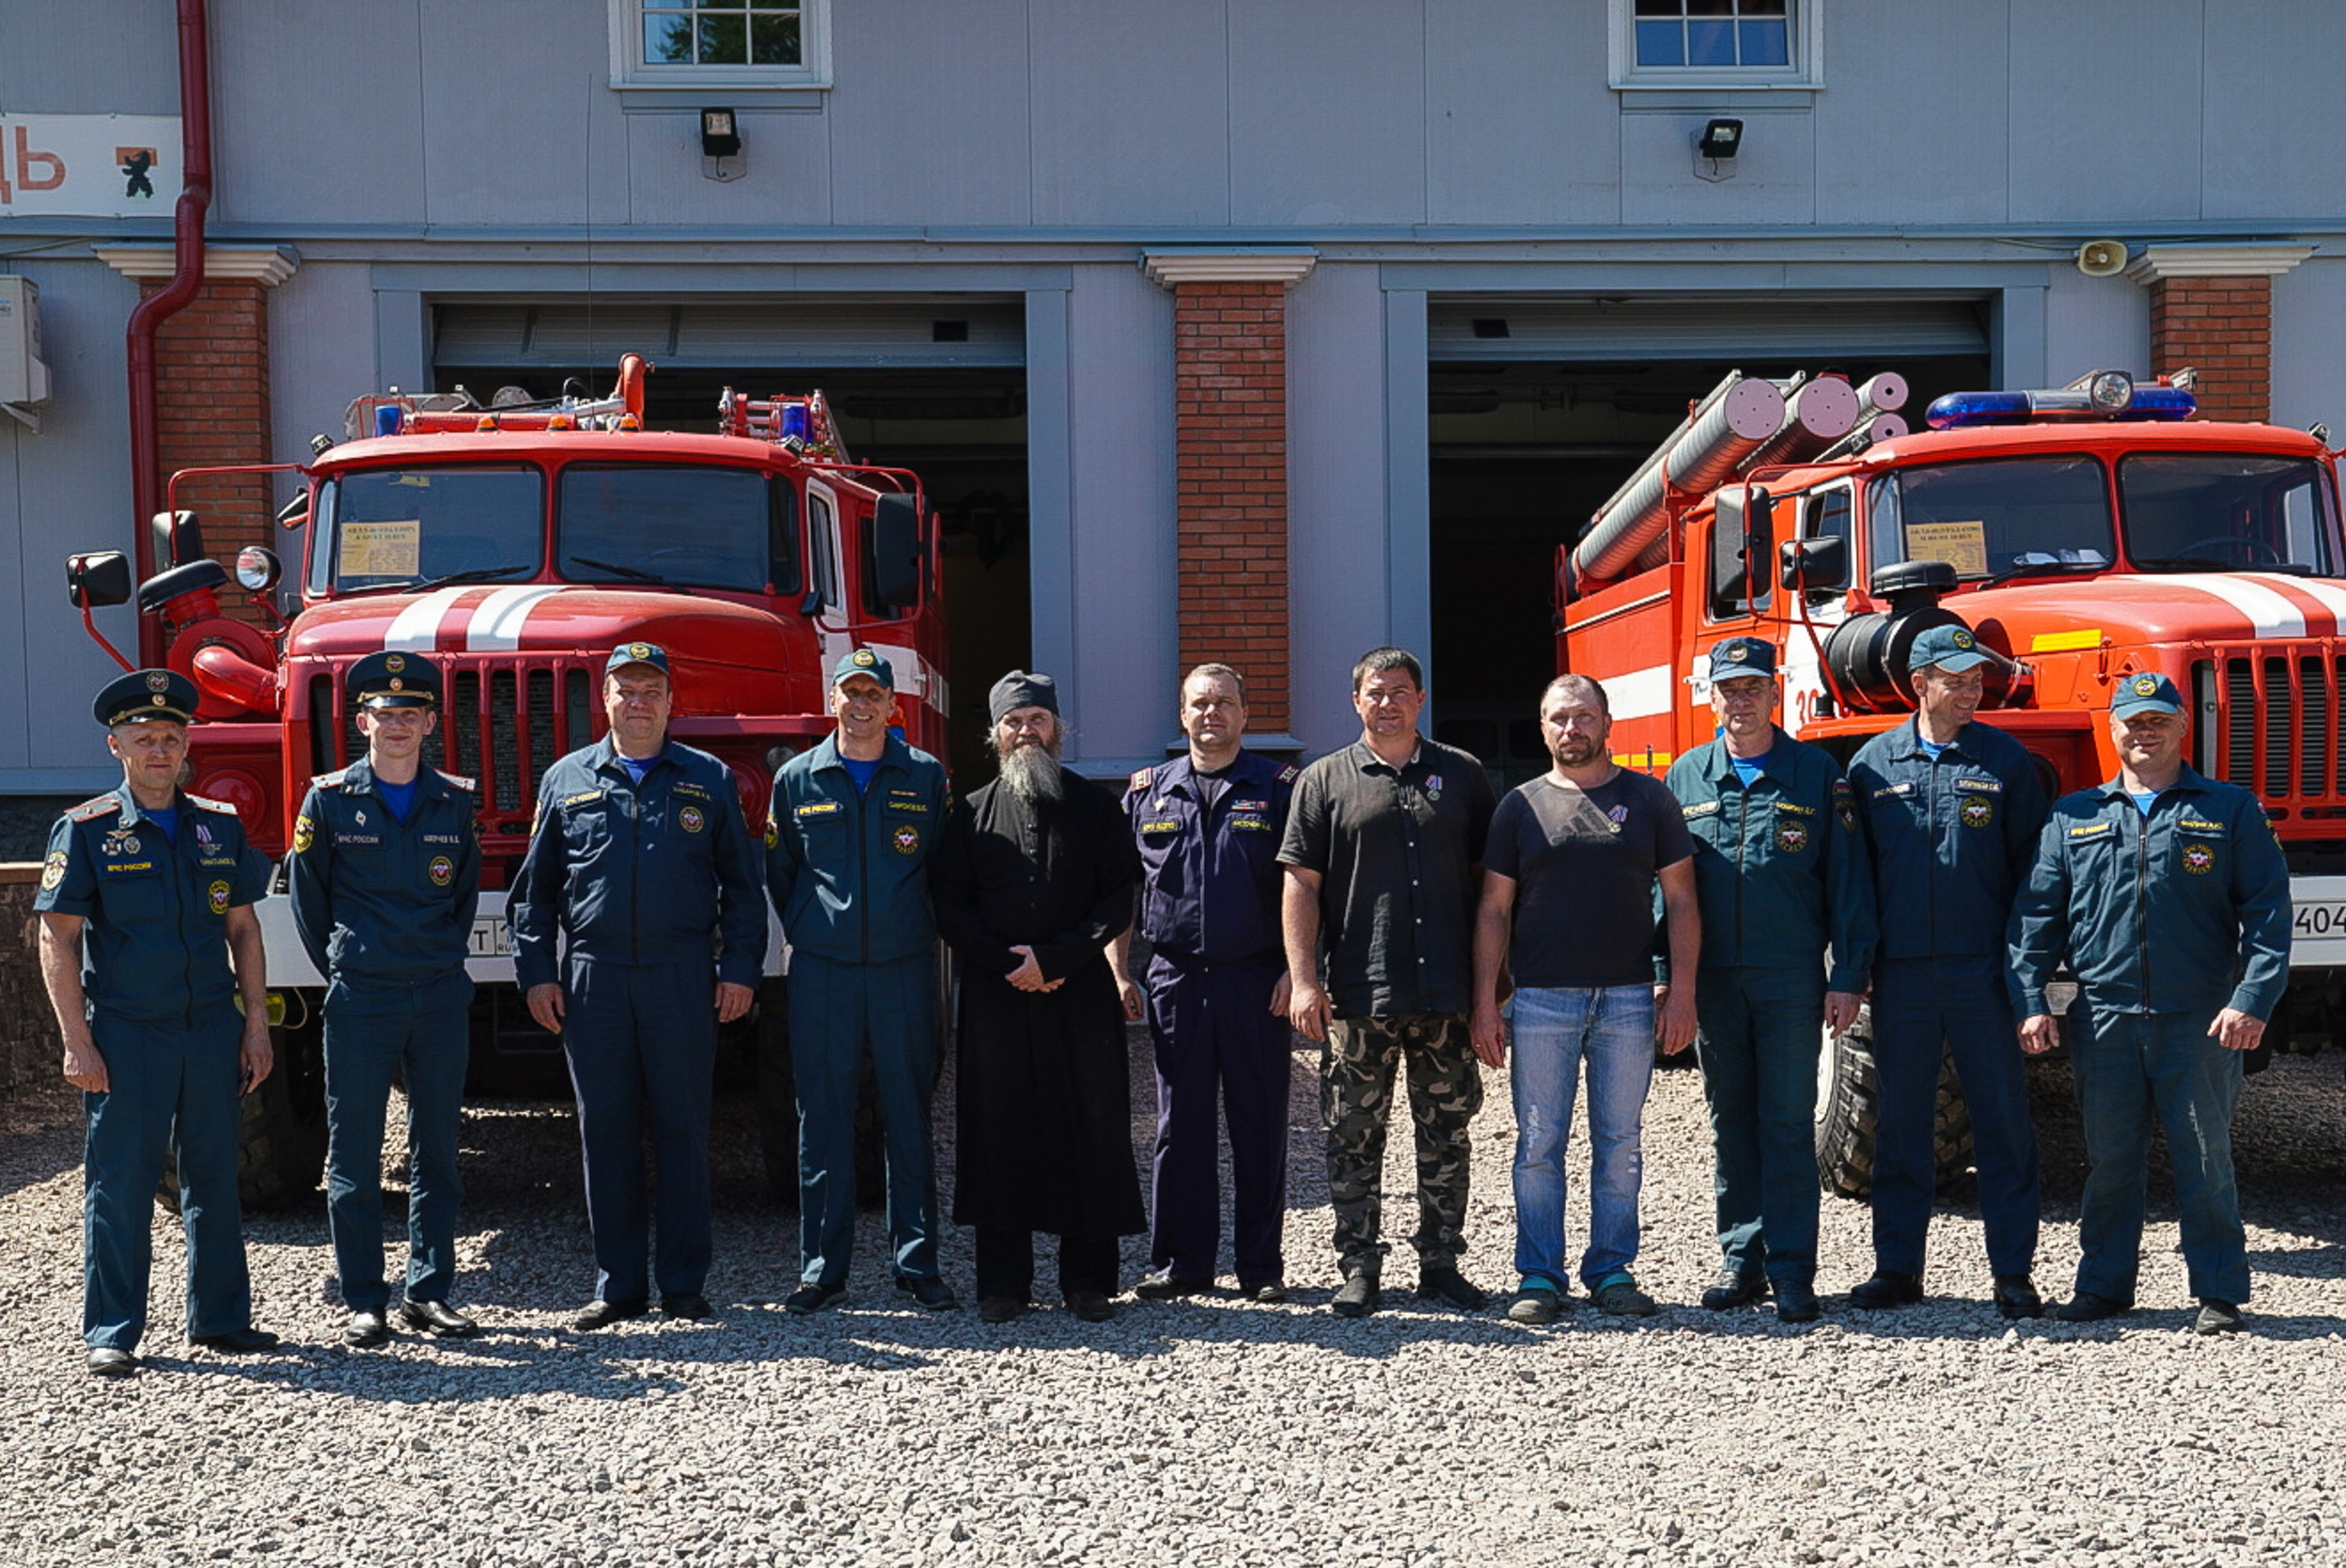 Награждение добровольной пожарной команды Валаамского монастыря и руководства пожарной части